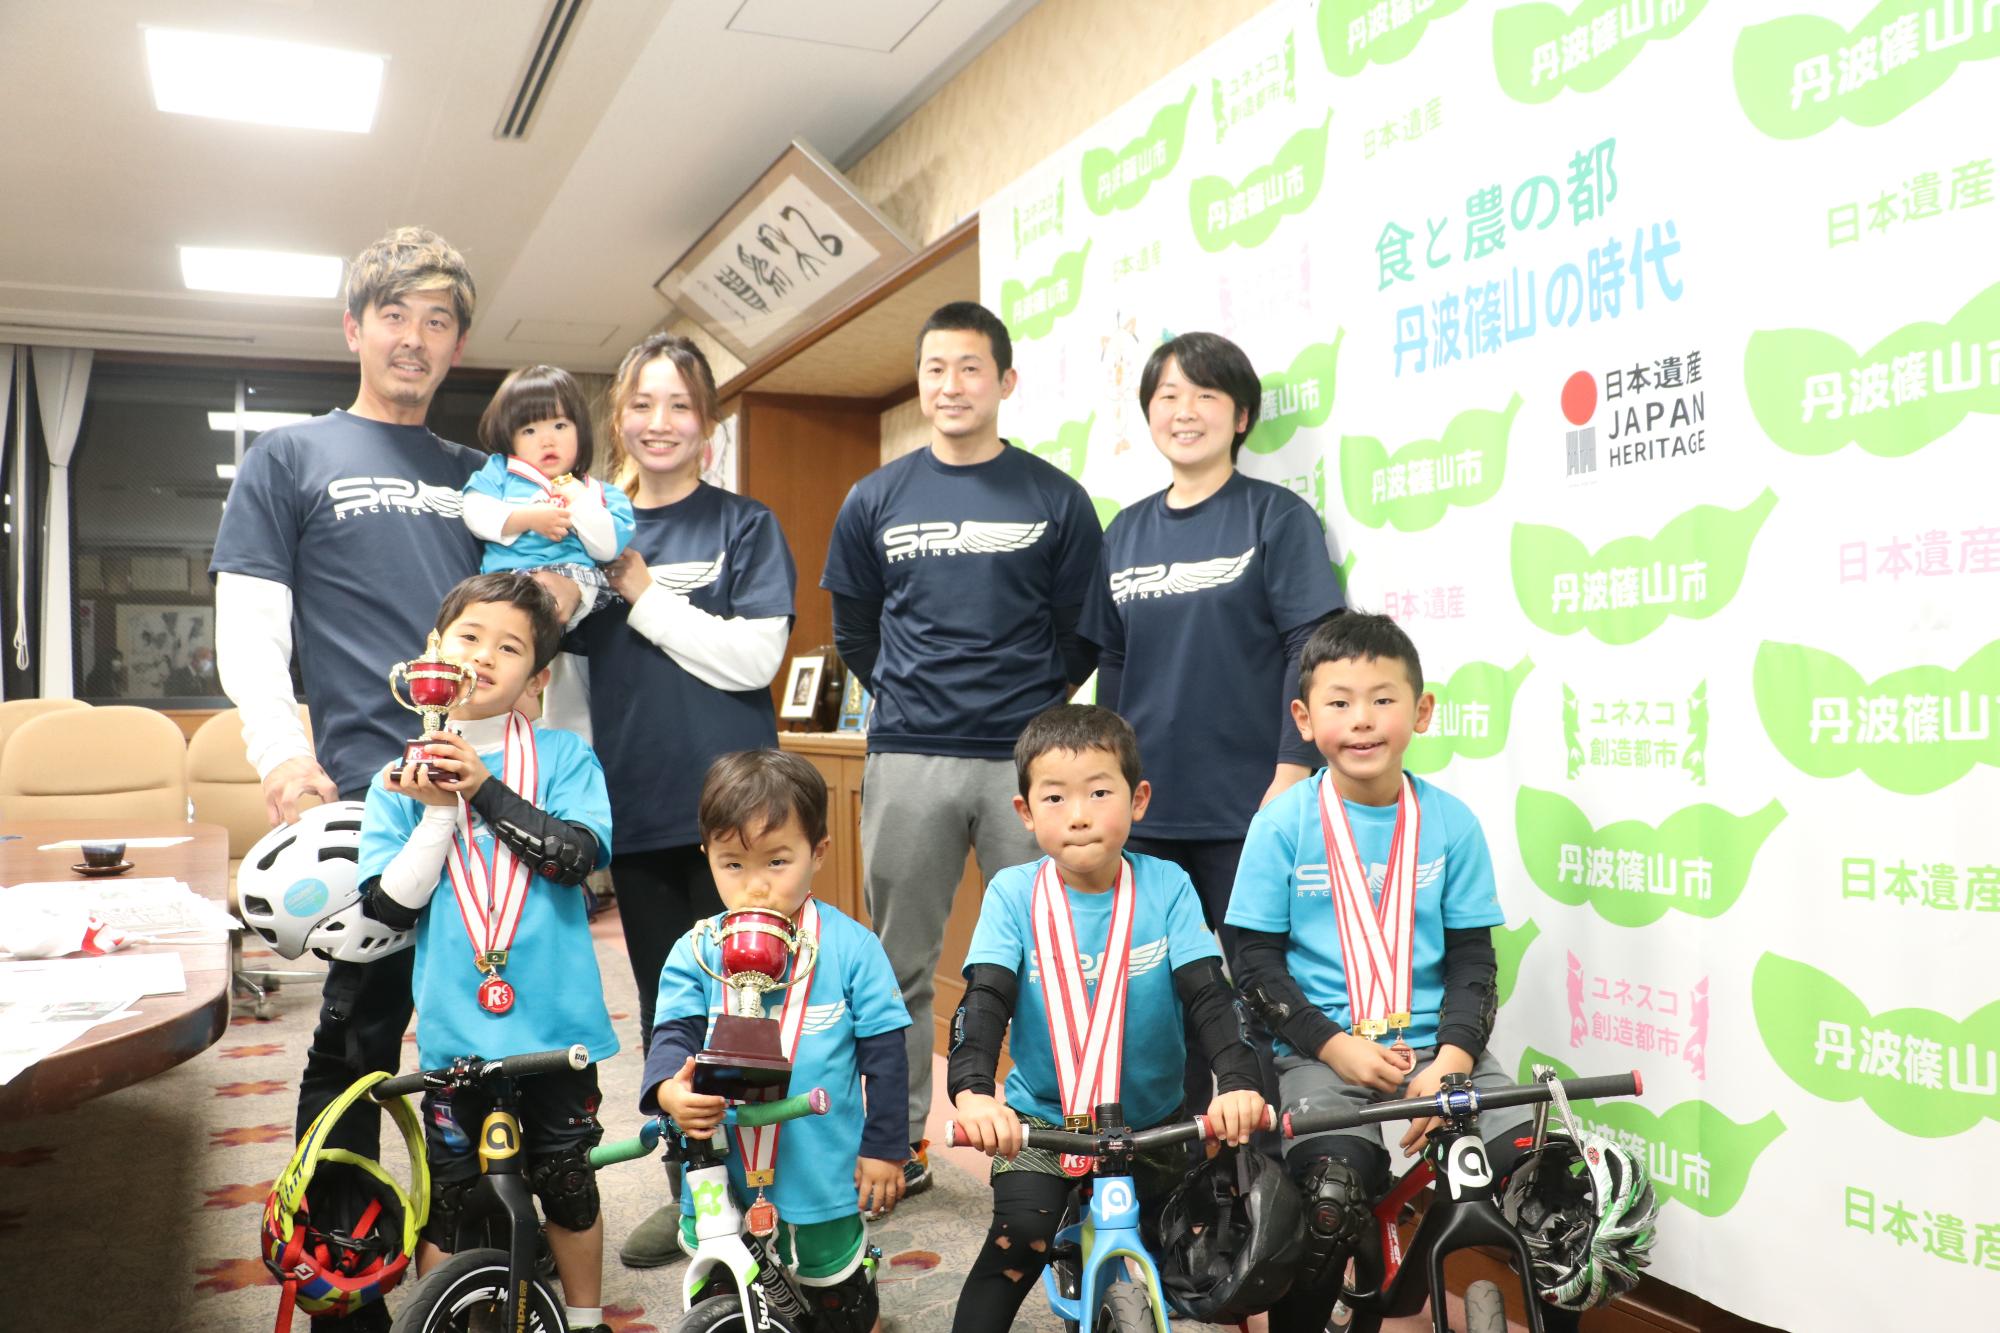 首にメダルをかけて自転車にまたがる4人の男児とその両親4人が並んでいる